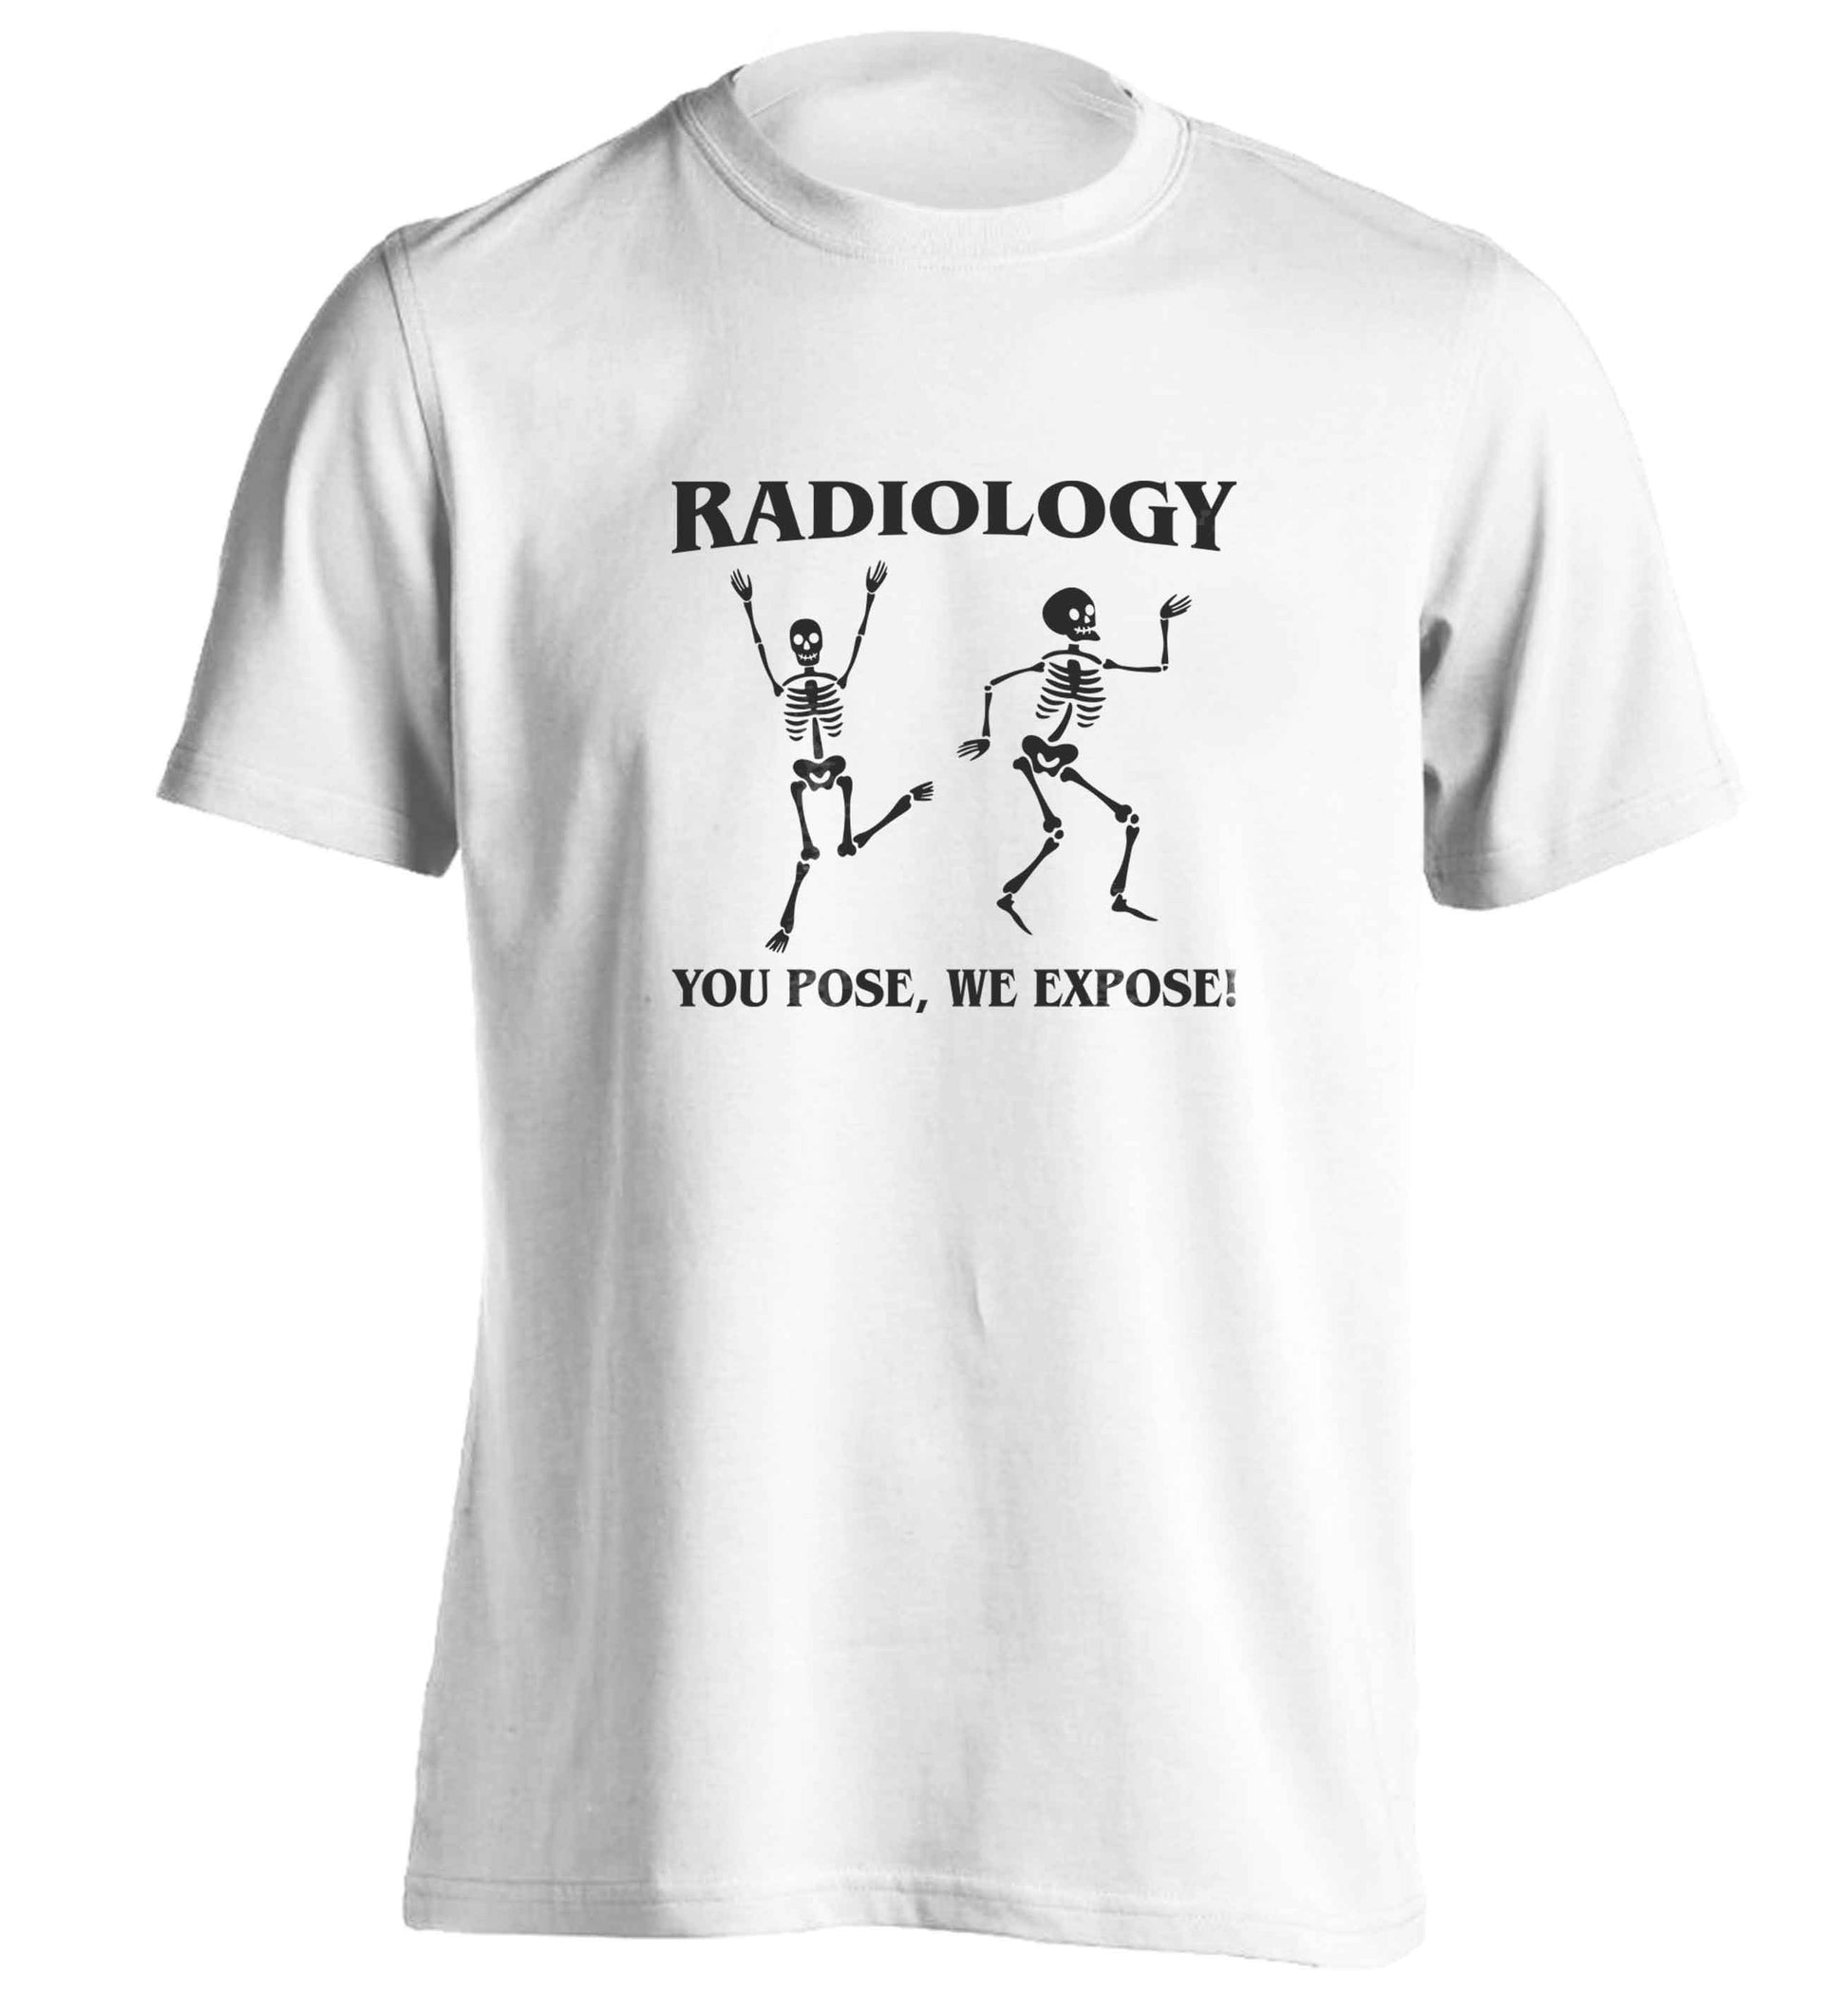 Radiology you pose we expose adults unisex white Tshirt 2XL